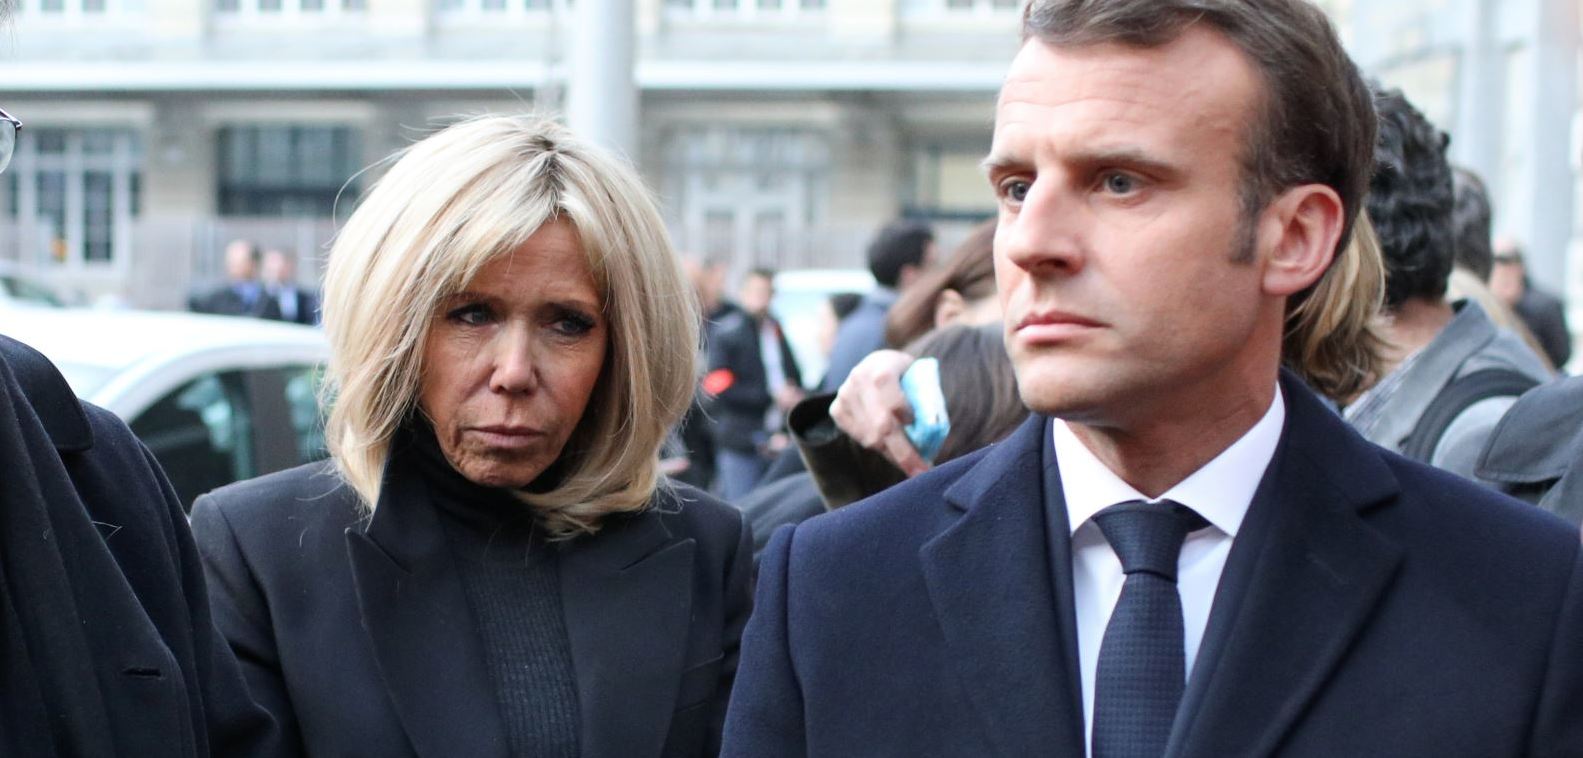 Incendie à Notre-Dame de Paris : L'émotion de Brigitte et Emmanuel Macron